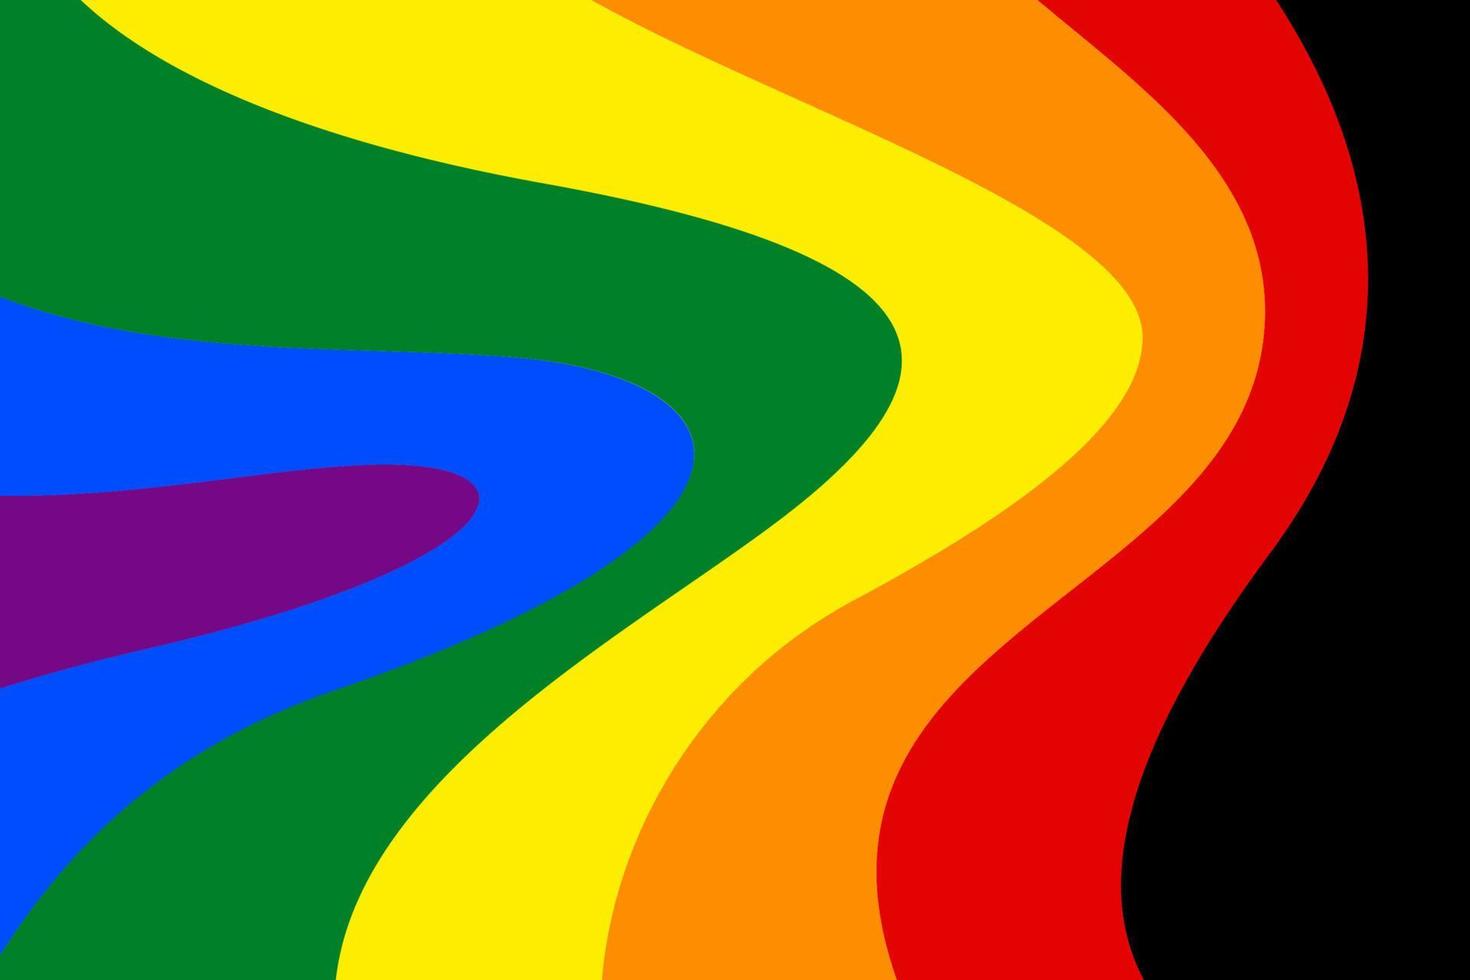 achtergrond met krommeontwerp, lgbtq regenboogkromme kleurontwerp, homoseksueel, lesbisch, biseksueel, homoseksueel, transseksueel menselijk concept. vector illustratie